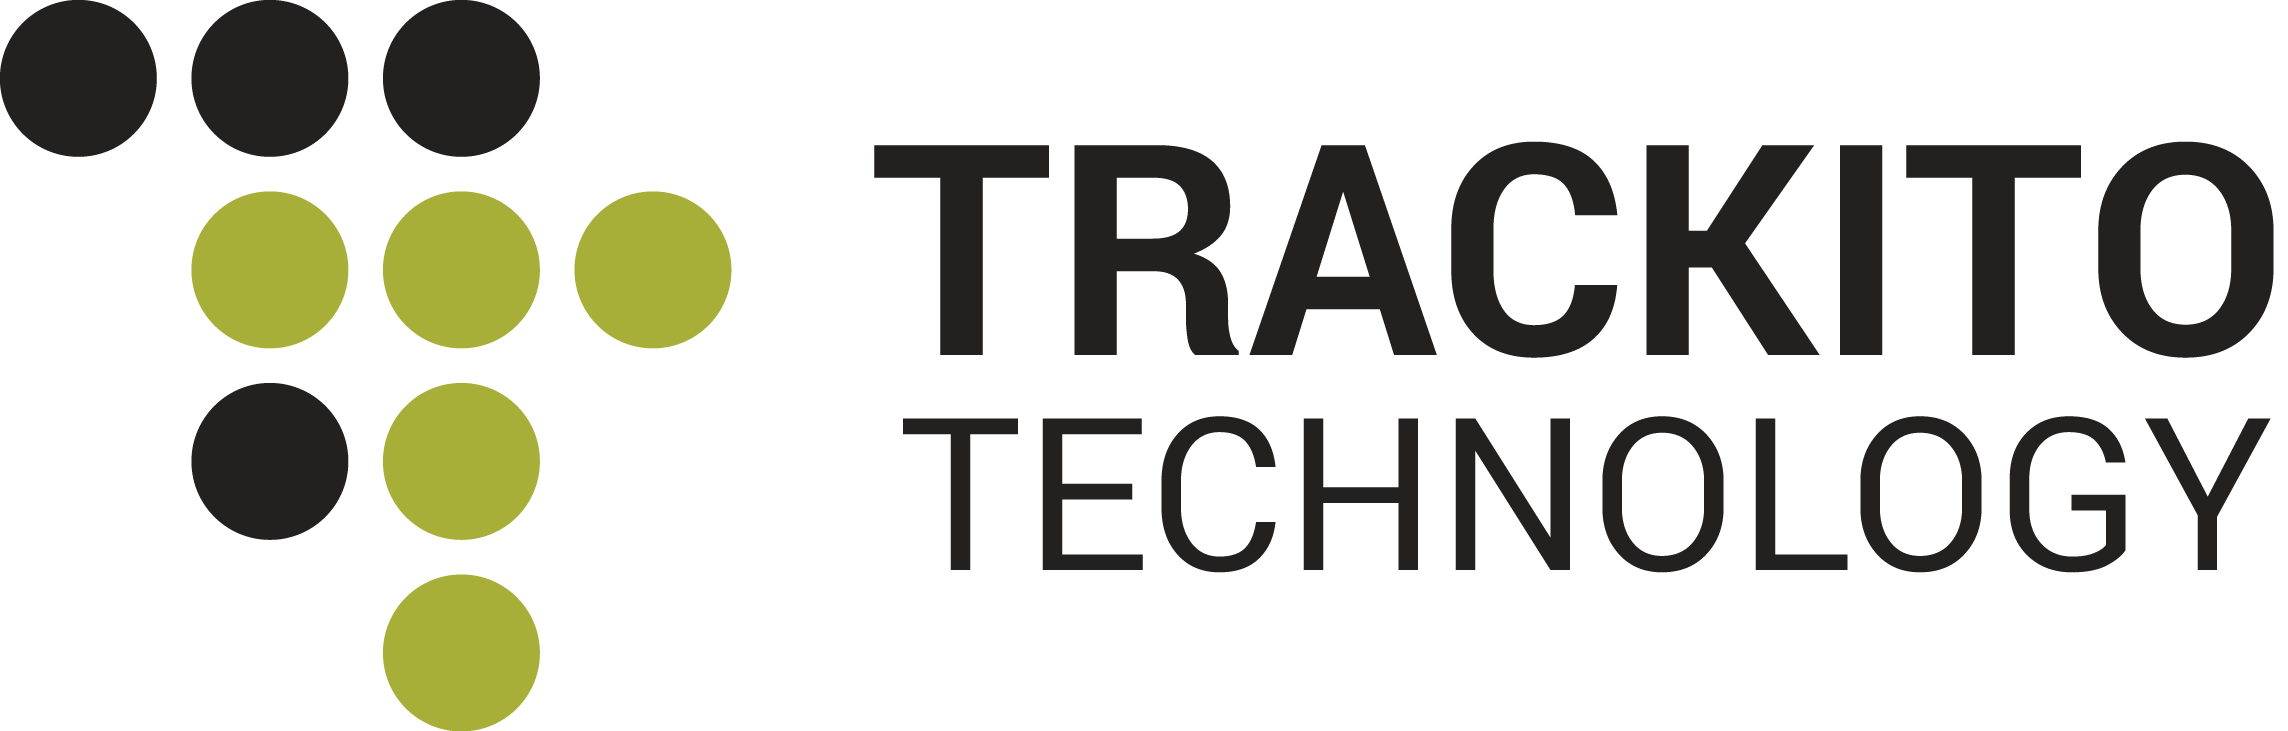 Chytré zabezpečení majetku :: Trackito Technology E-shop